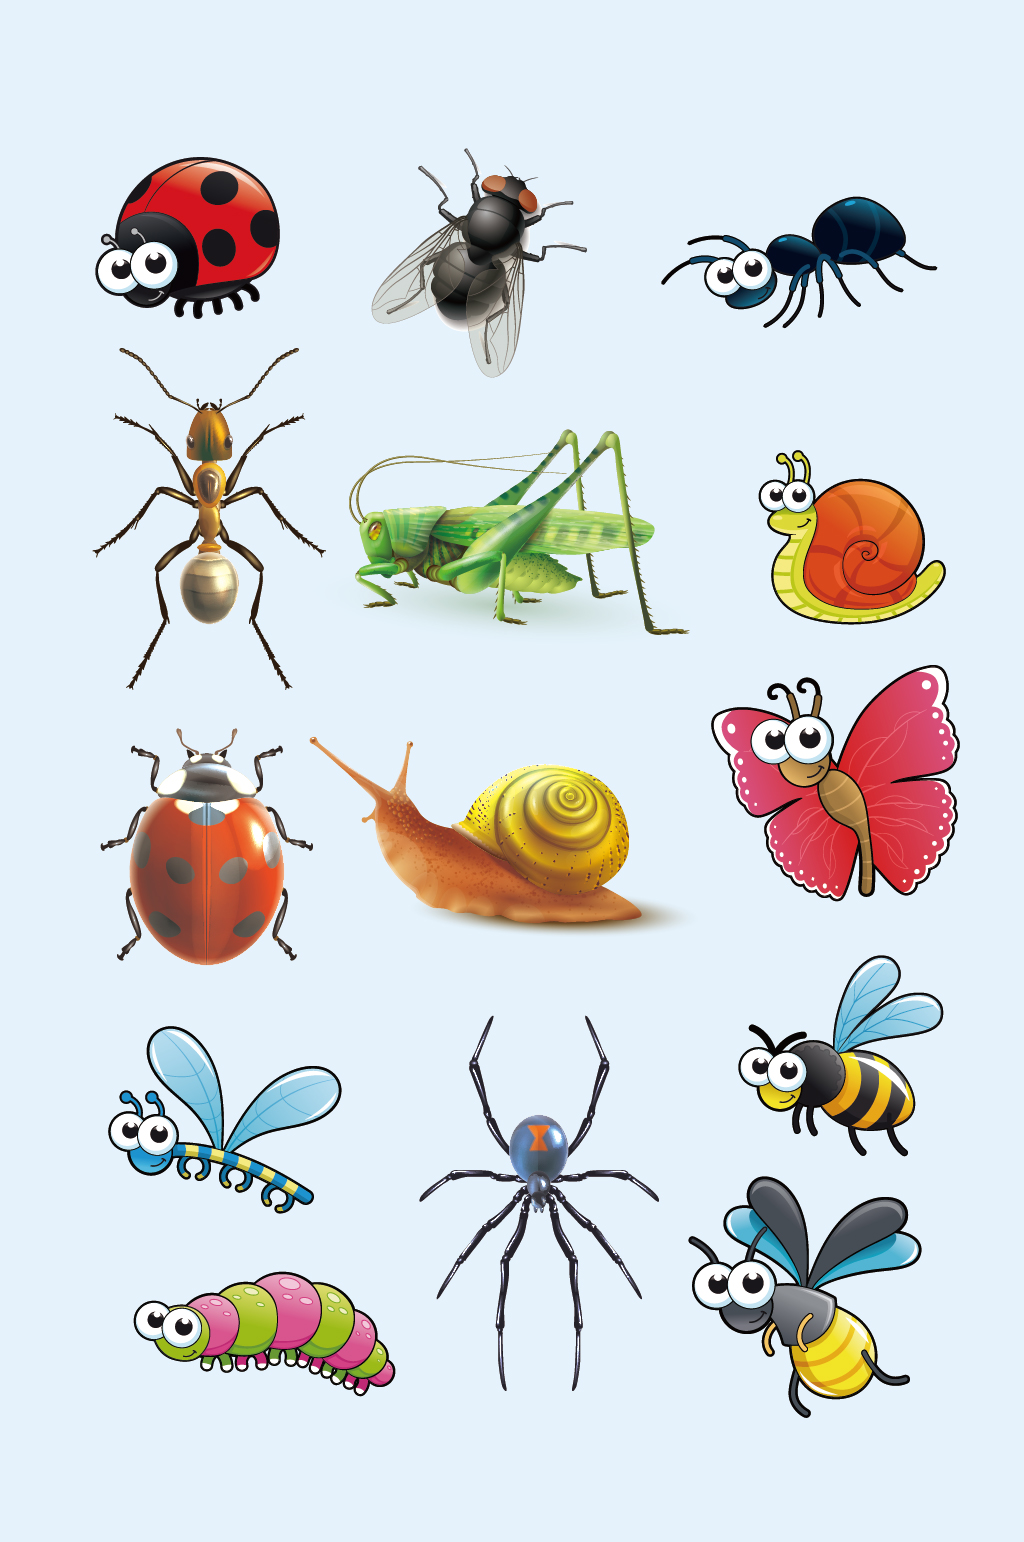 卡通虫子昆虫图片大全大图立即下载ai矢量虫子昆虫图片大全大图立即